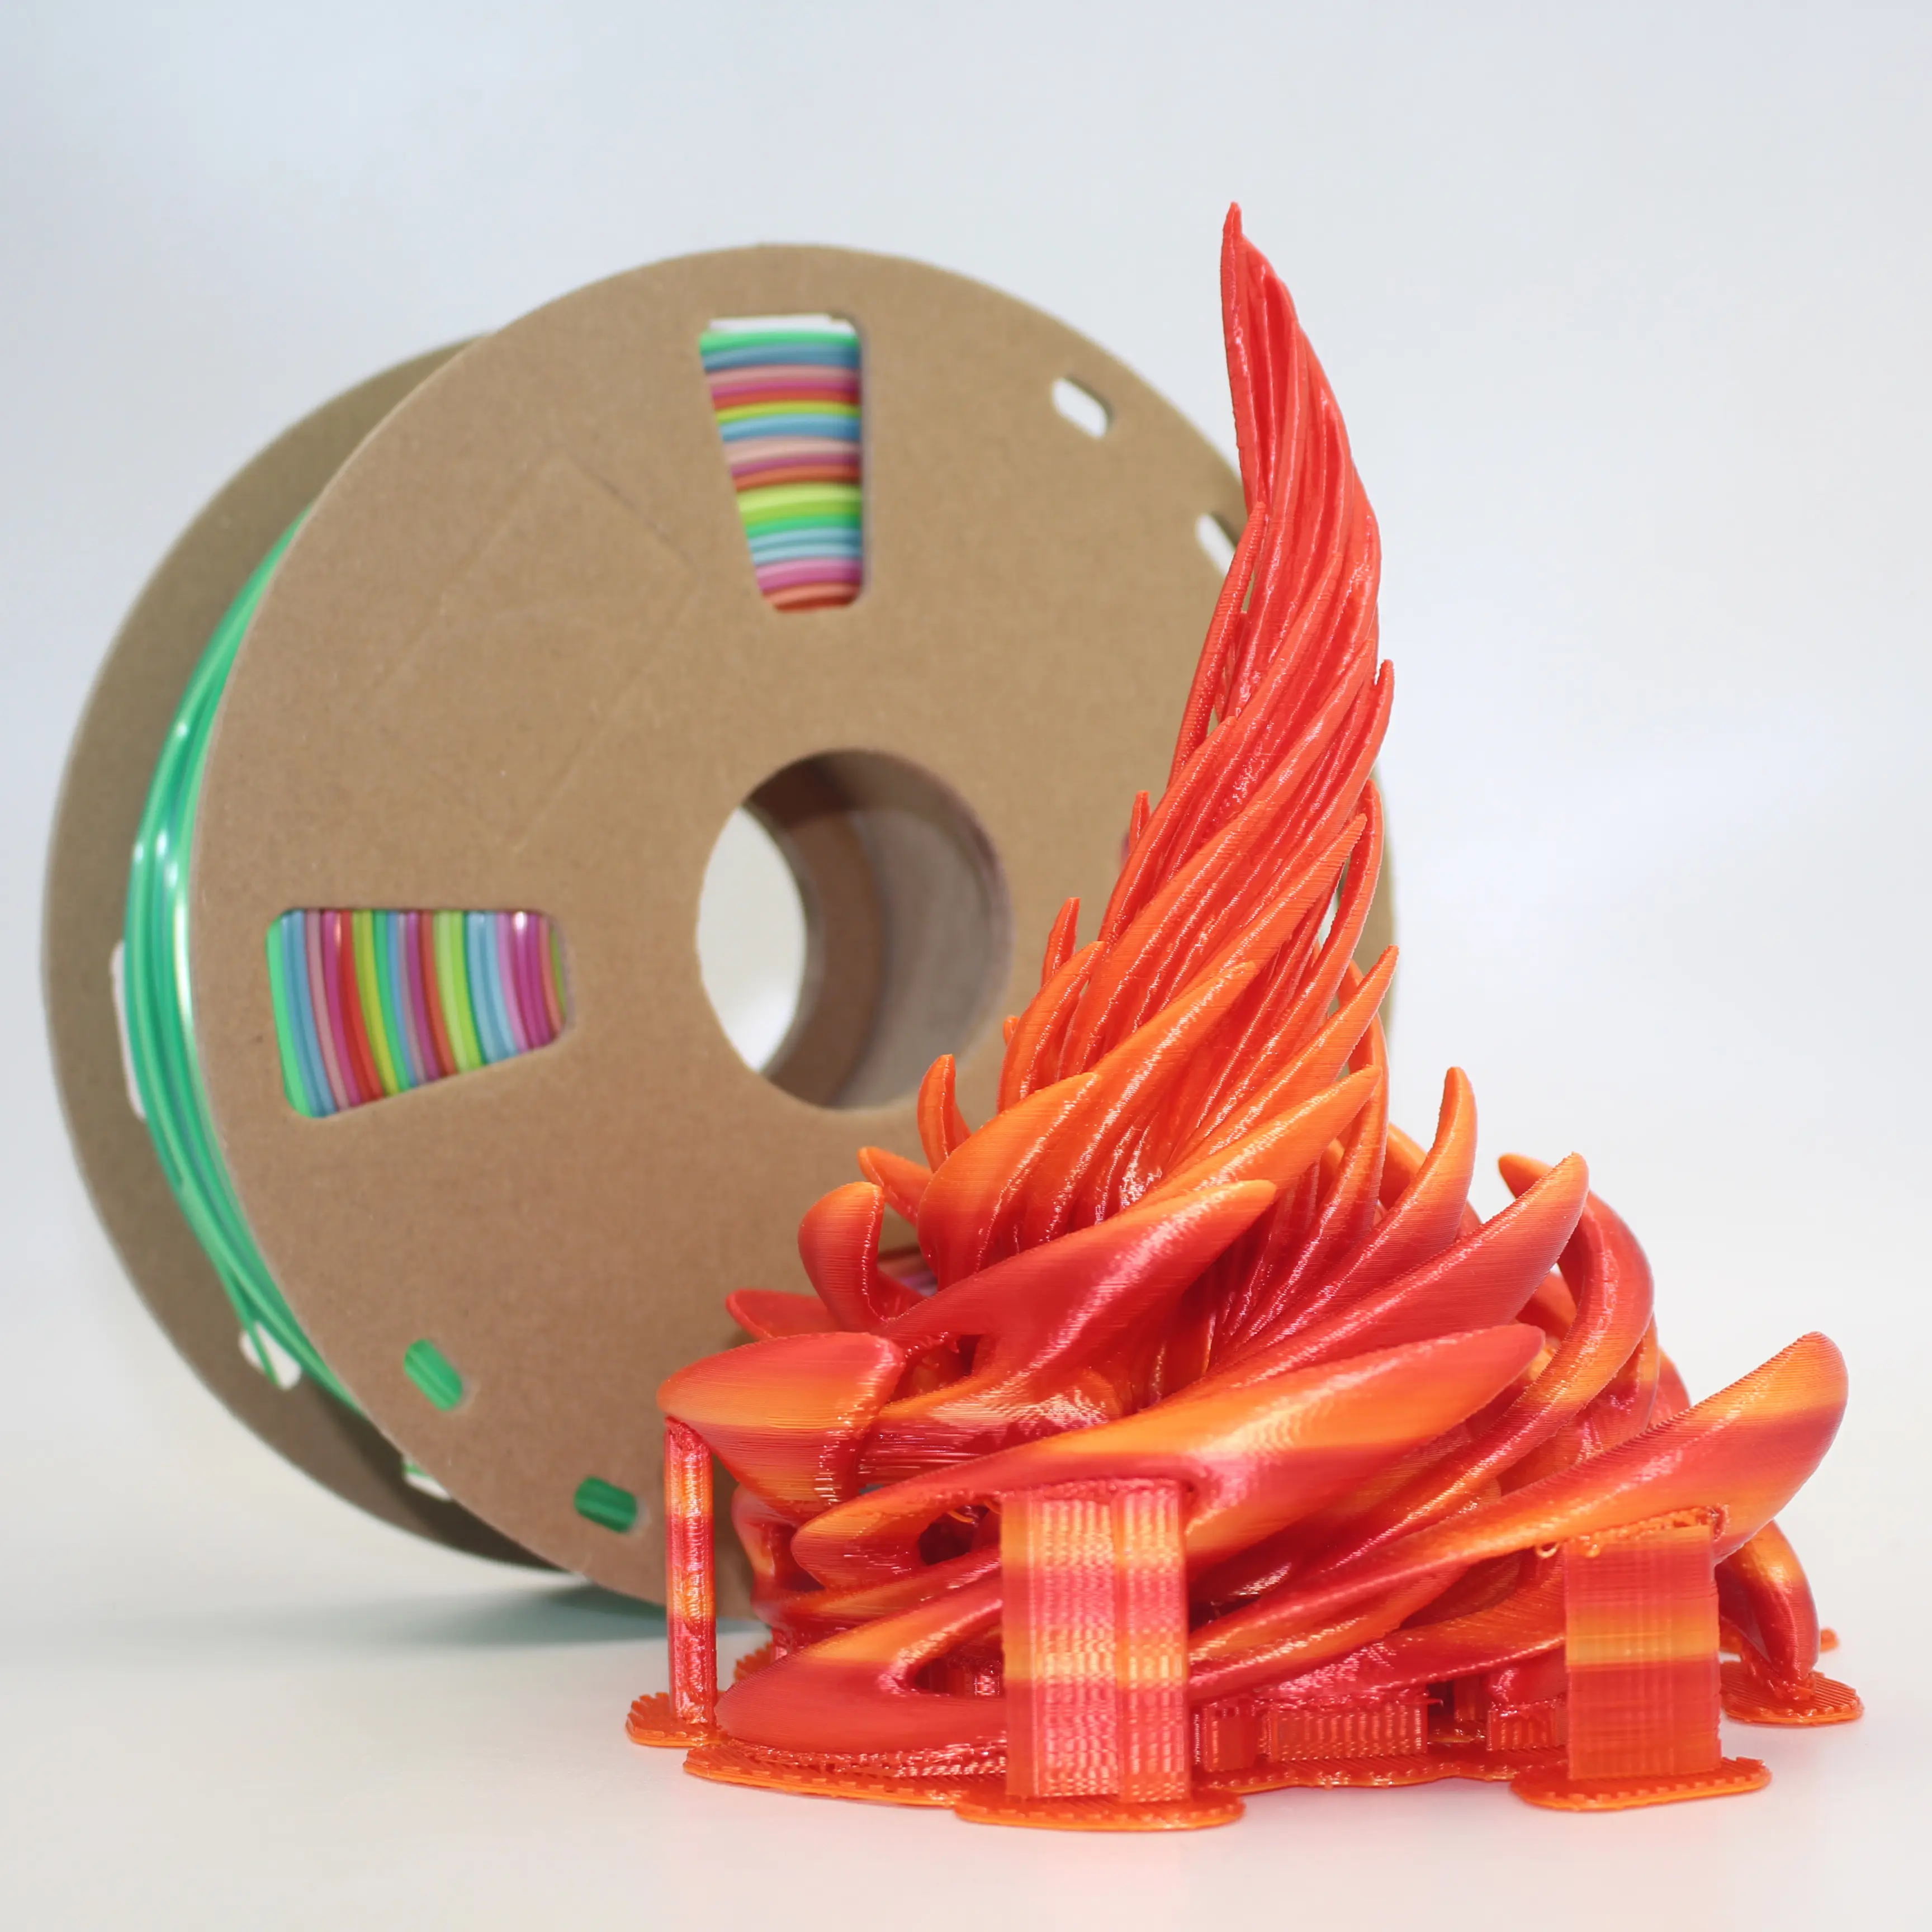 Commercio all'ingrosso Wisdream PLA silk fire yellow red filament filamento per stampante 3D filamento PLA